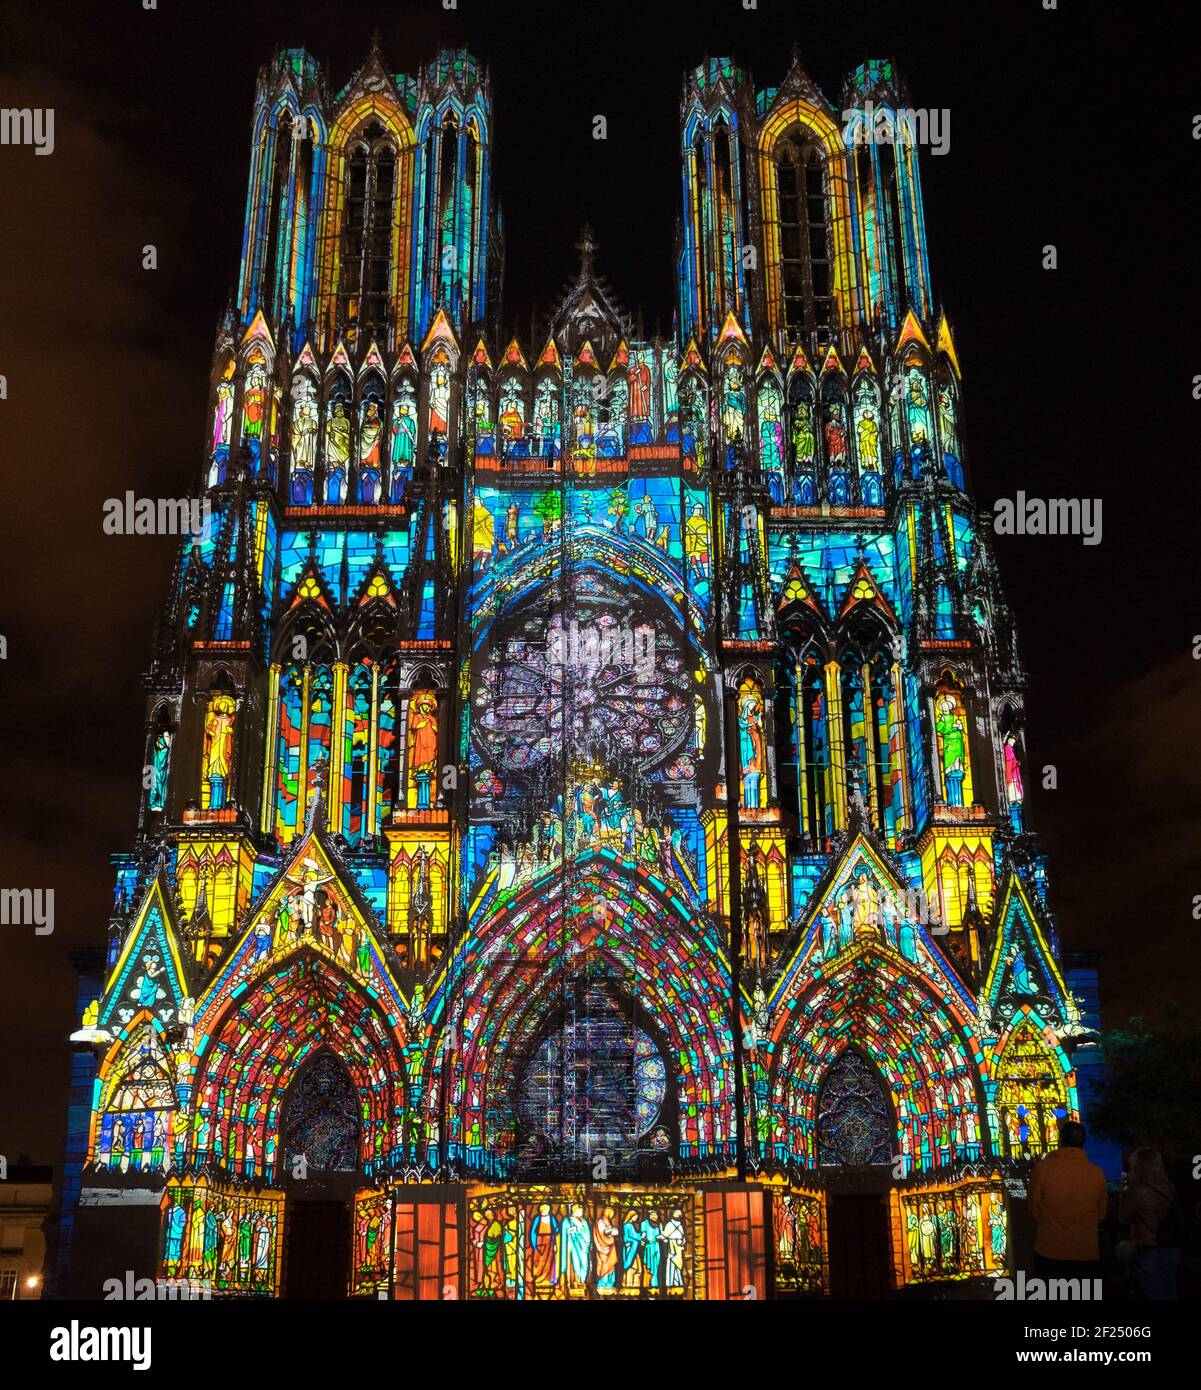 Lichtshow in die Kathedrale von Reims Stockfotografie - Alamy